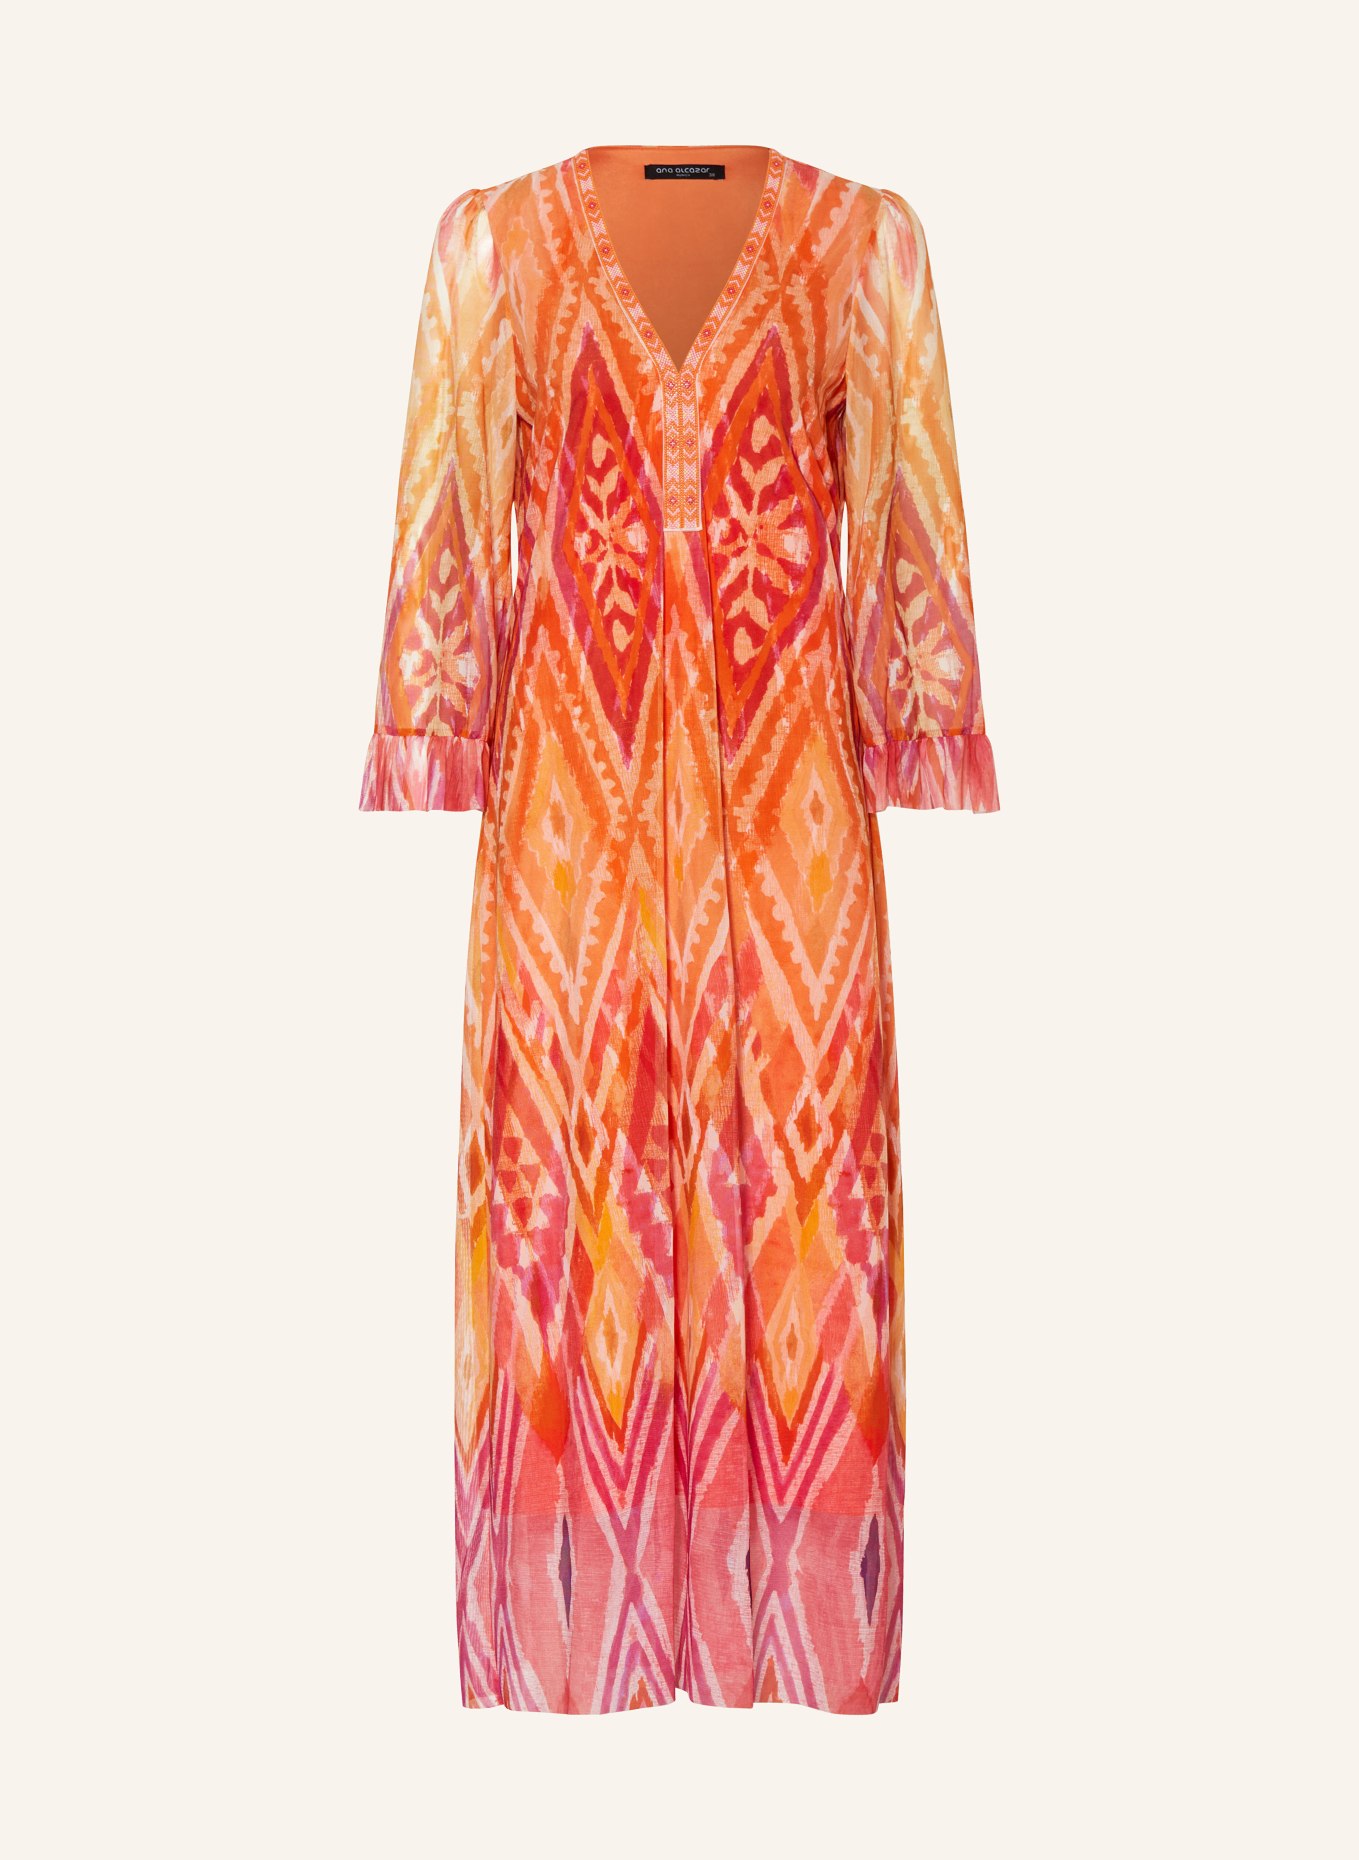 Ana Alcazar Mesh-Kleid mit Schmuckperlen, Farbe: ORANGE/ FUCHSIA/ LILA (Bild 1)